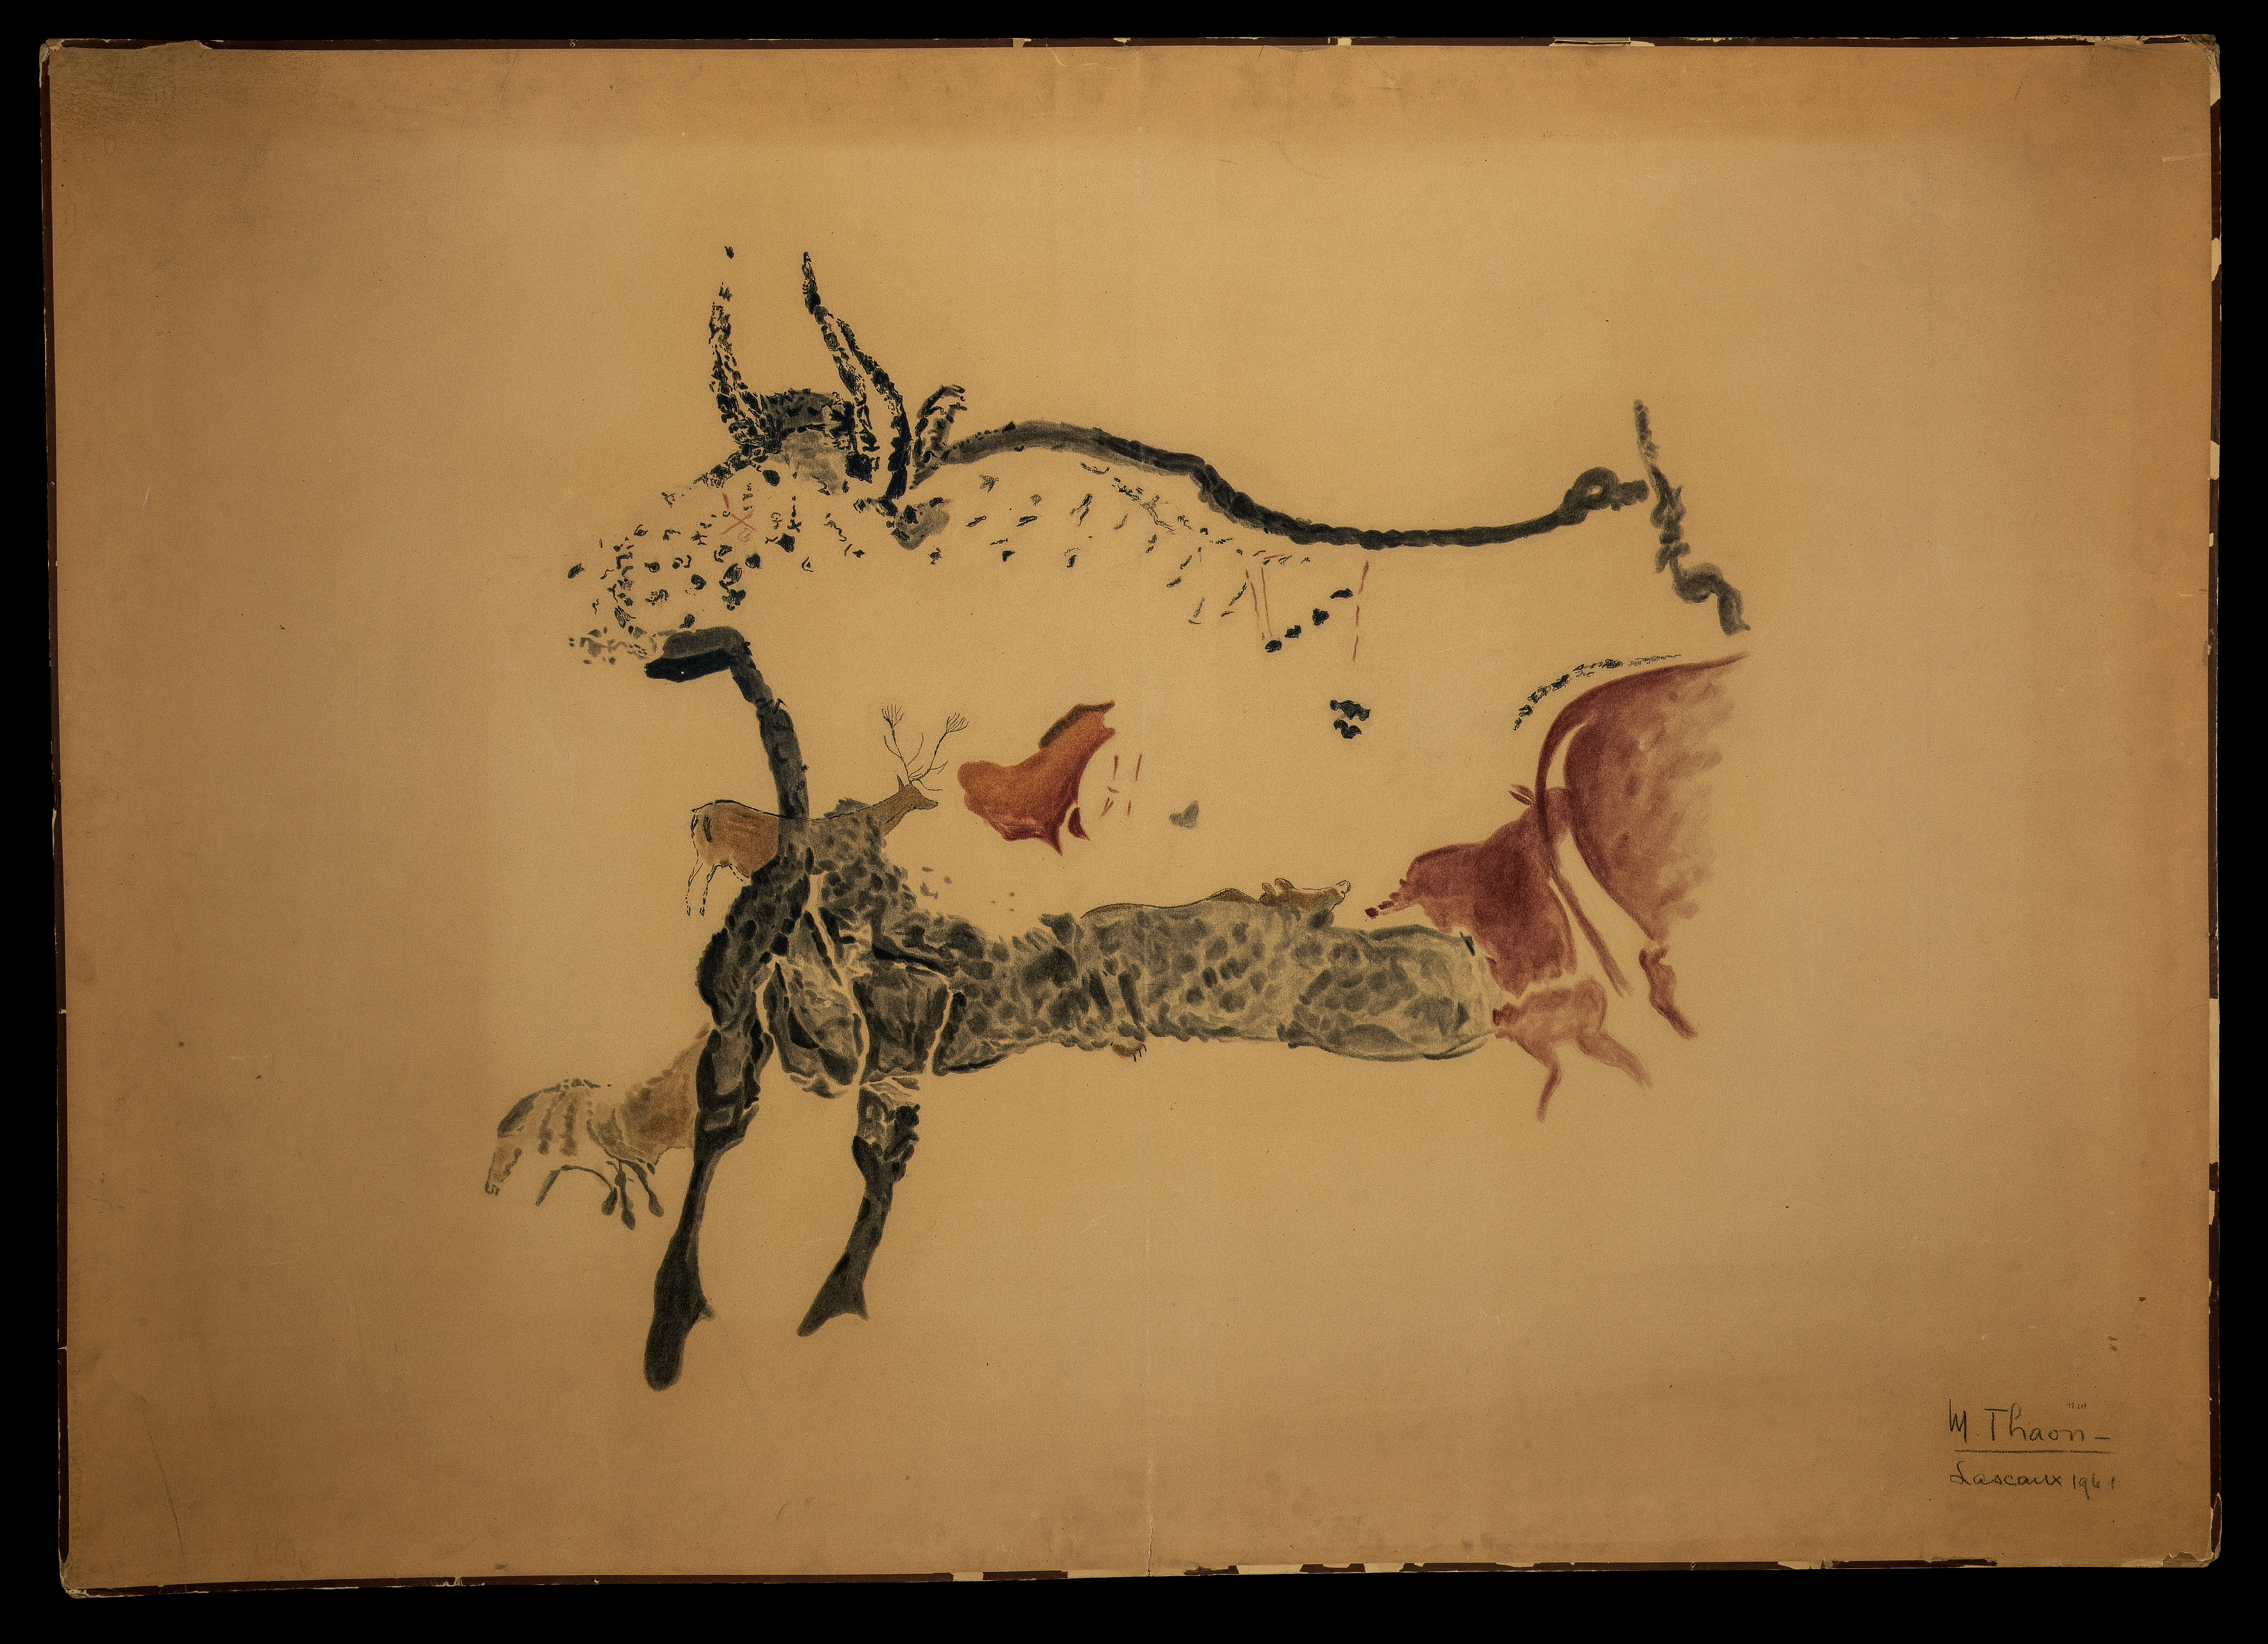 Relevé Lascaux - M. Thaon - Deuxième taureau passant à gauche avec plusieurs animaux en superposition, cerf, chevaux et arrière-train de bovidé